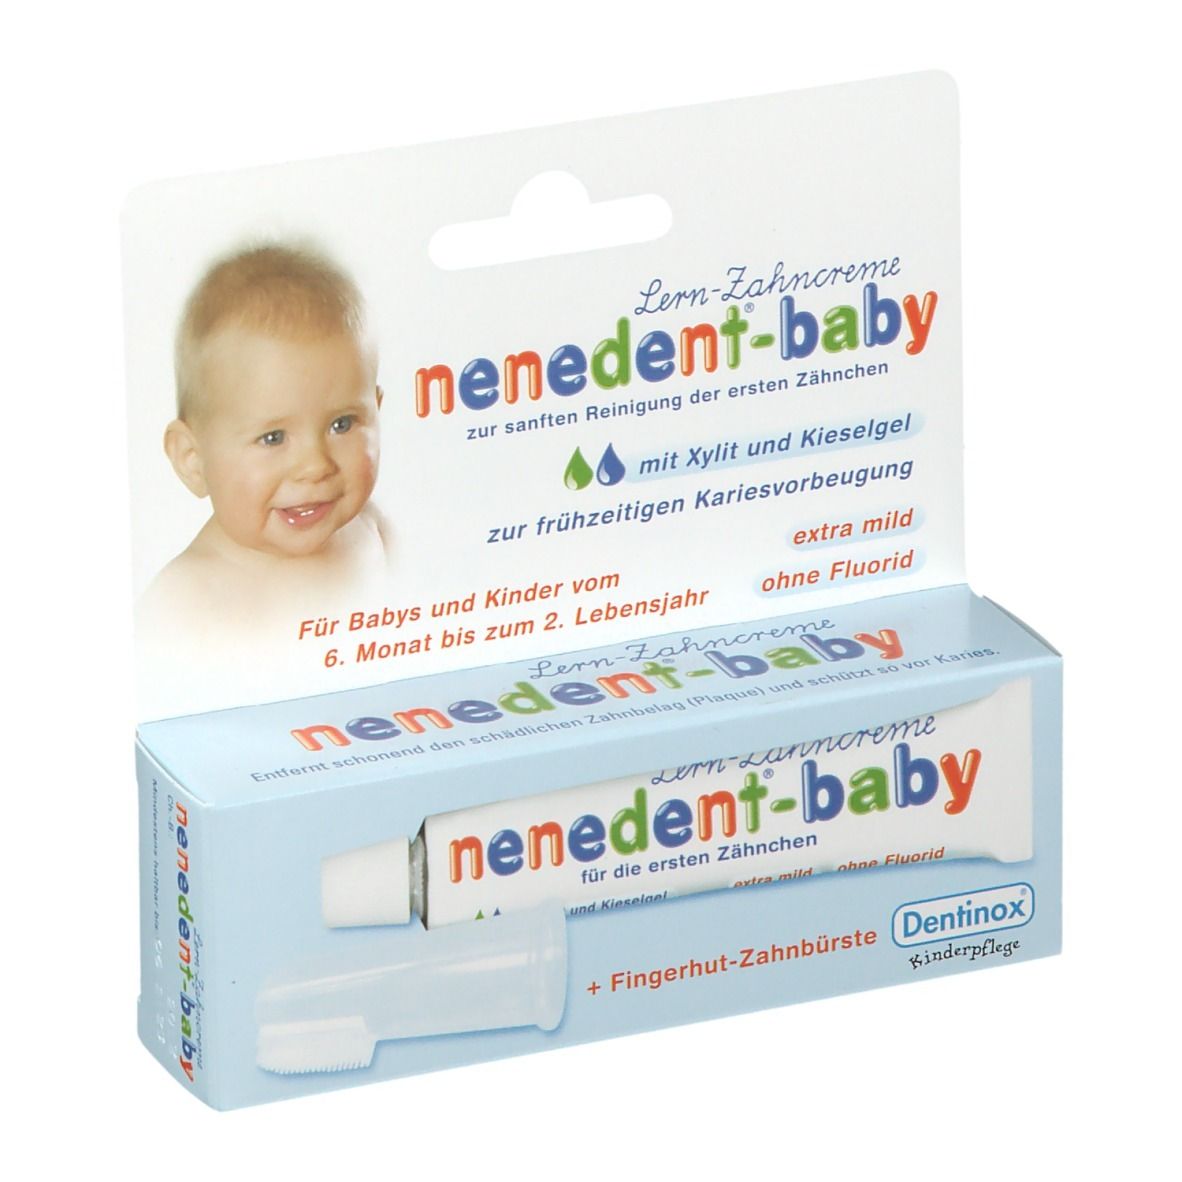 nenedent®-baby Zahnpflege-Lernset mit Fingerhut-Zahnbürste